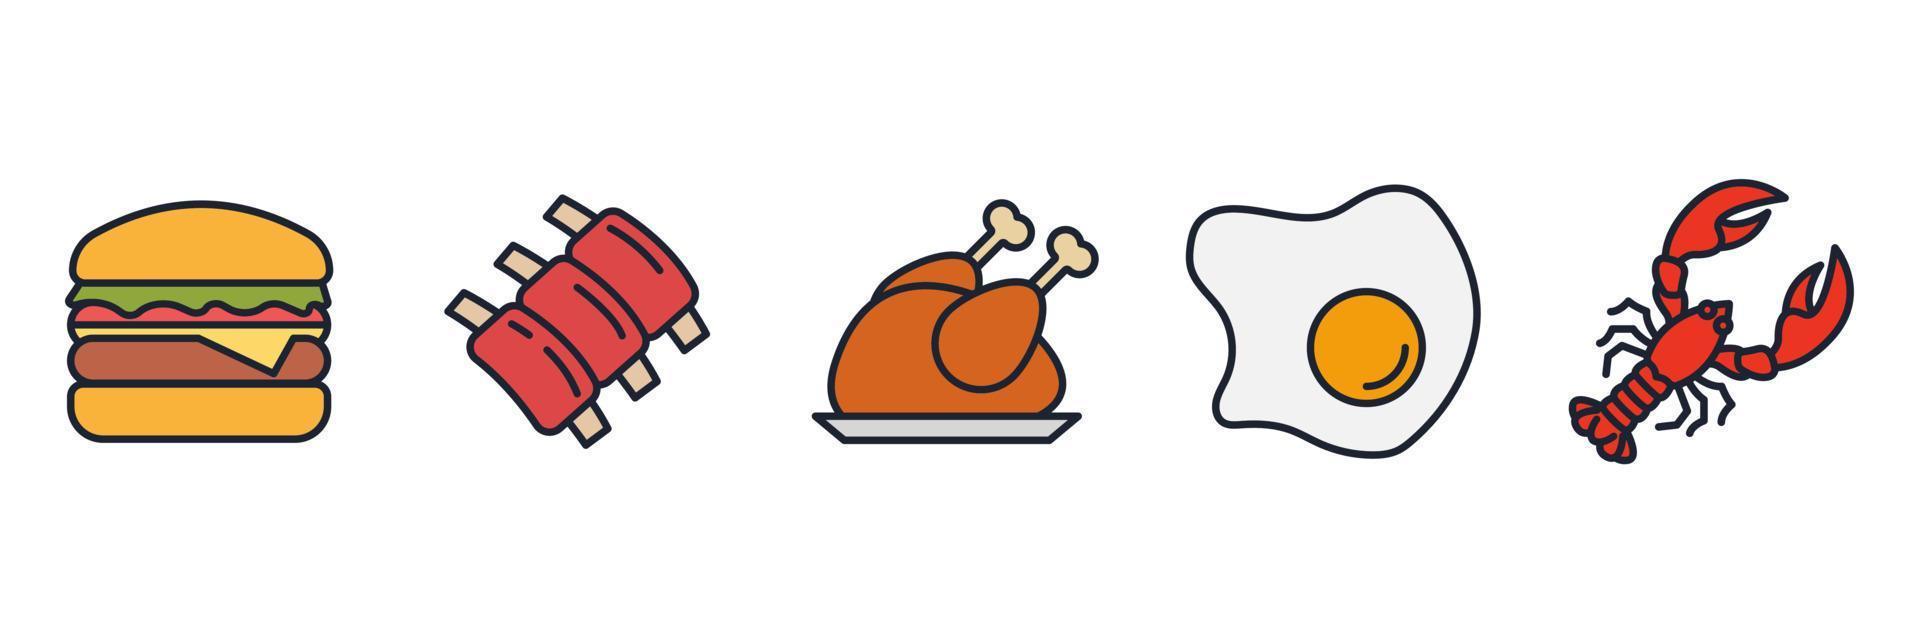 la viande, la volaille, le poisson et les œufs définissent un modèle de symbole d'icône pour l'illustration vectorielle du logo de la collection de conception graphique et web vecteur